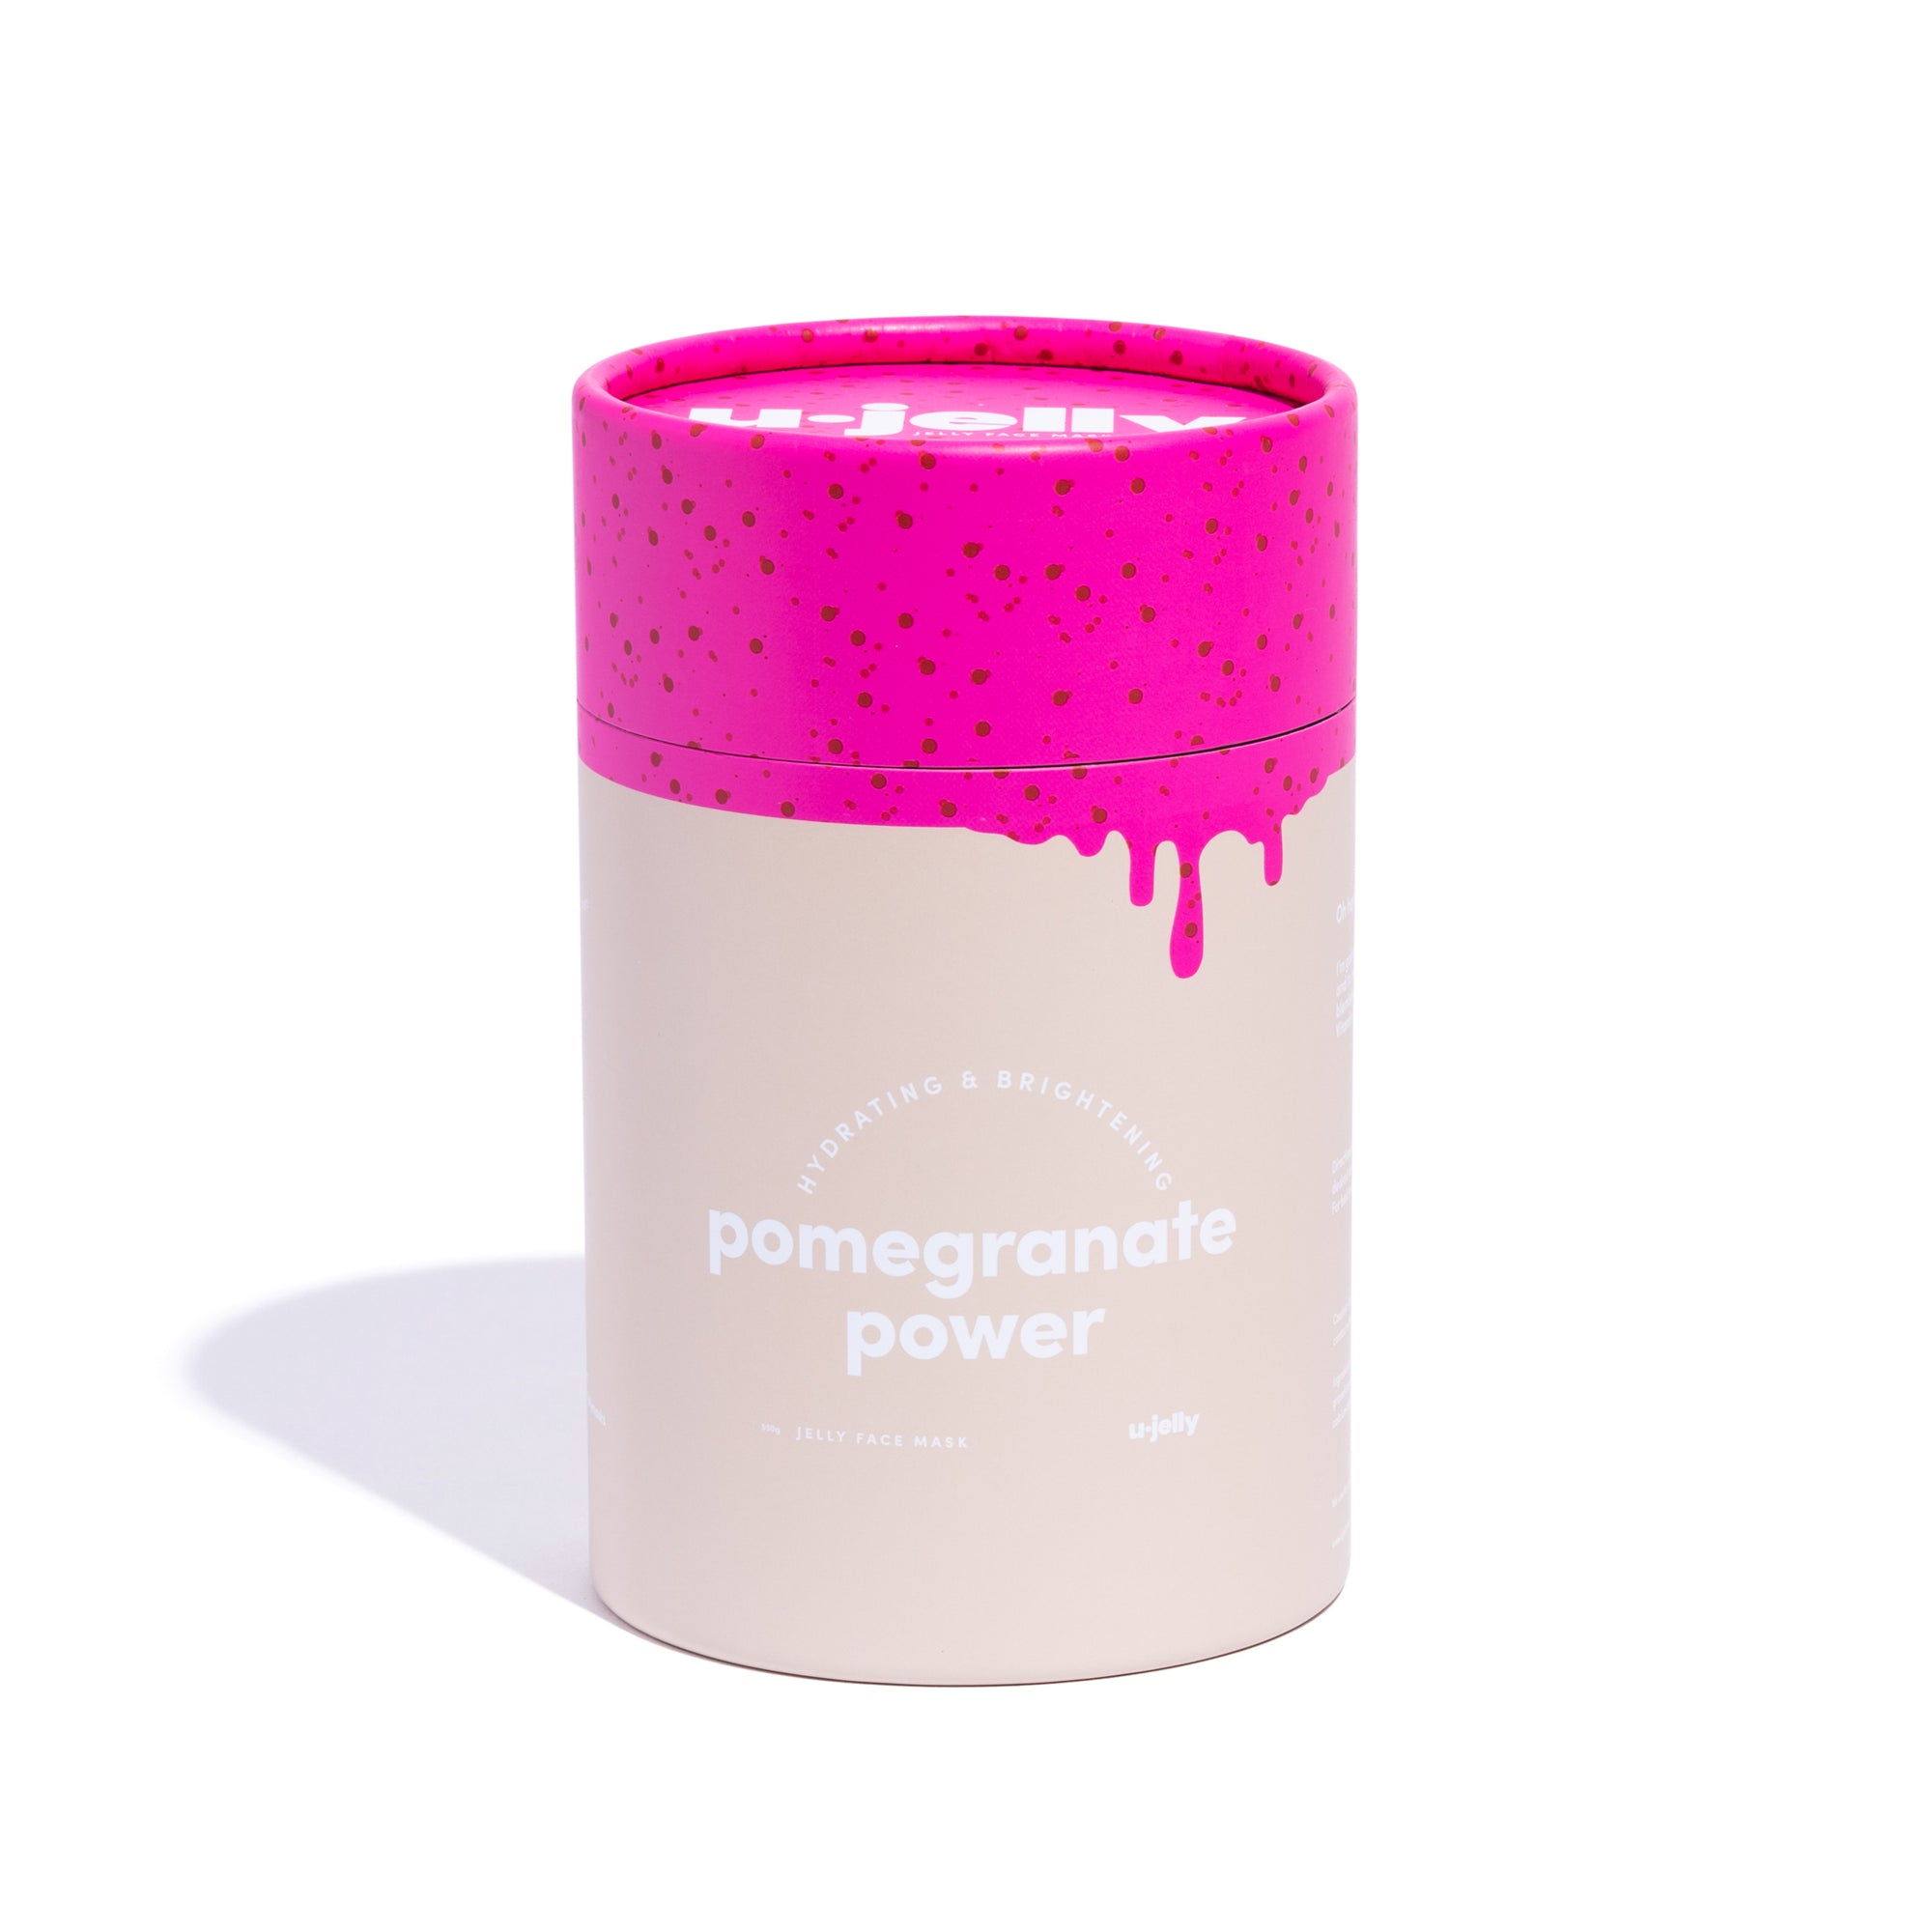 Pomegranate Jelly face masks